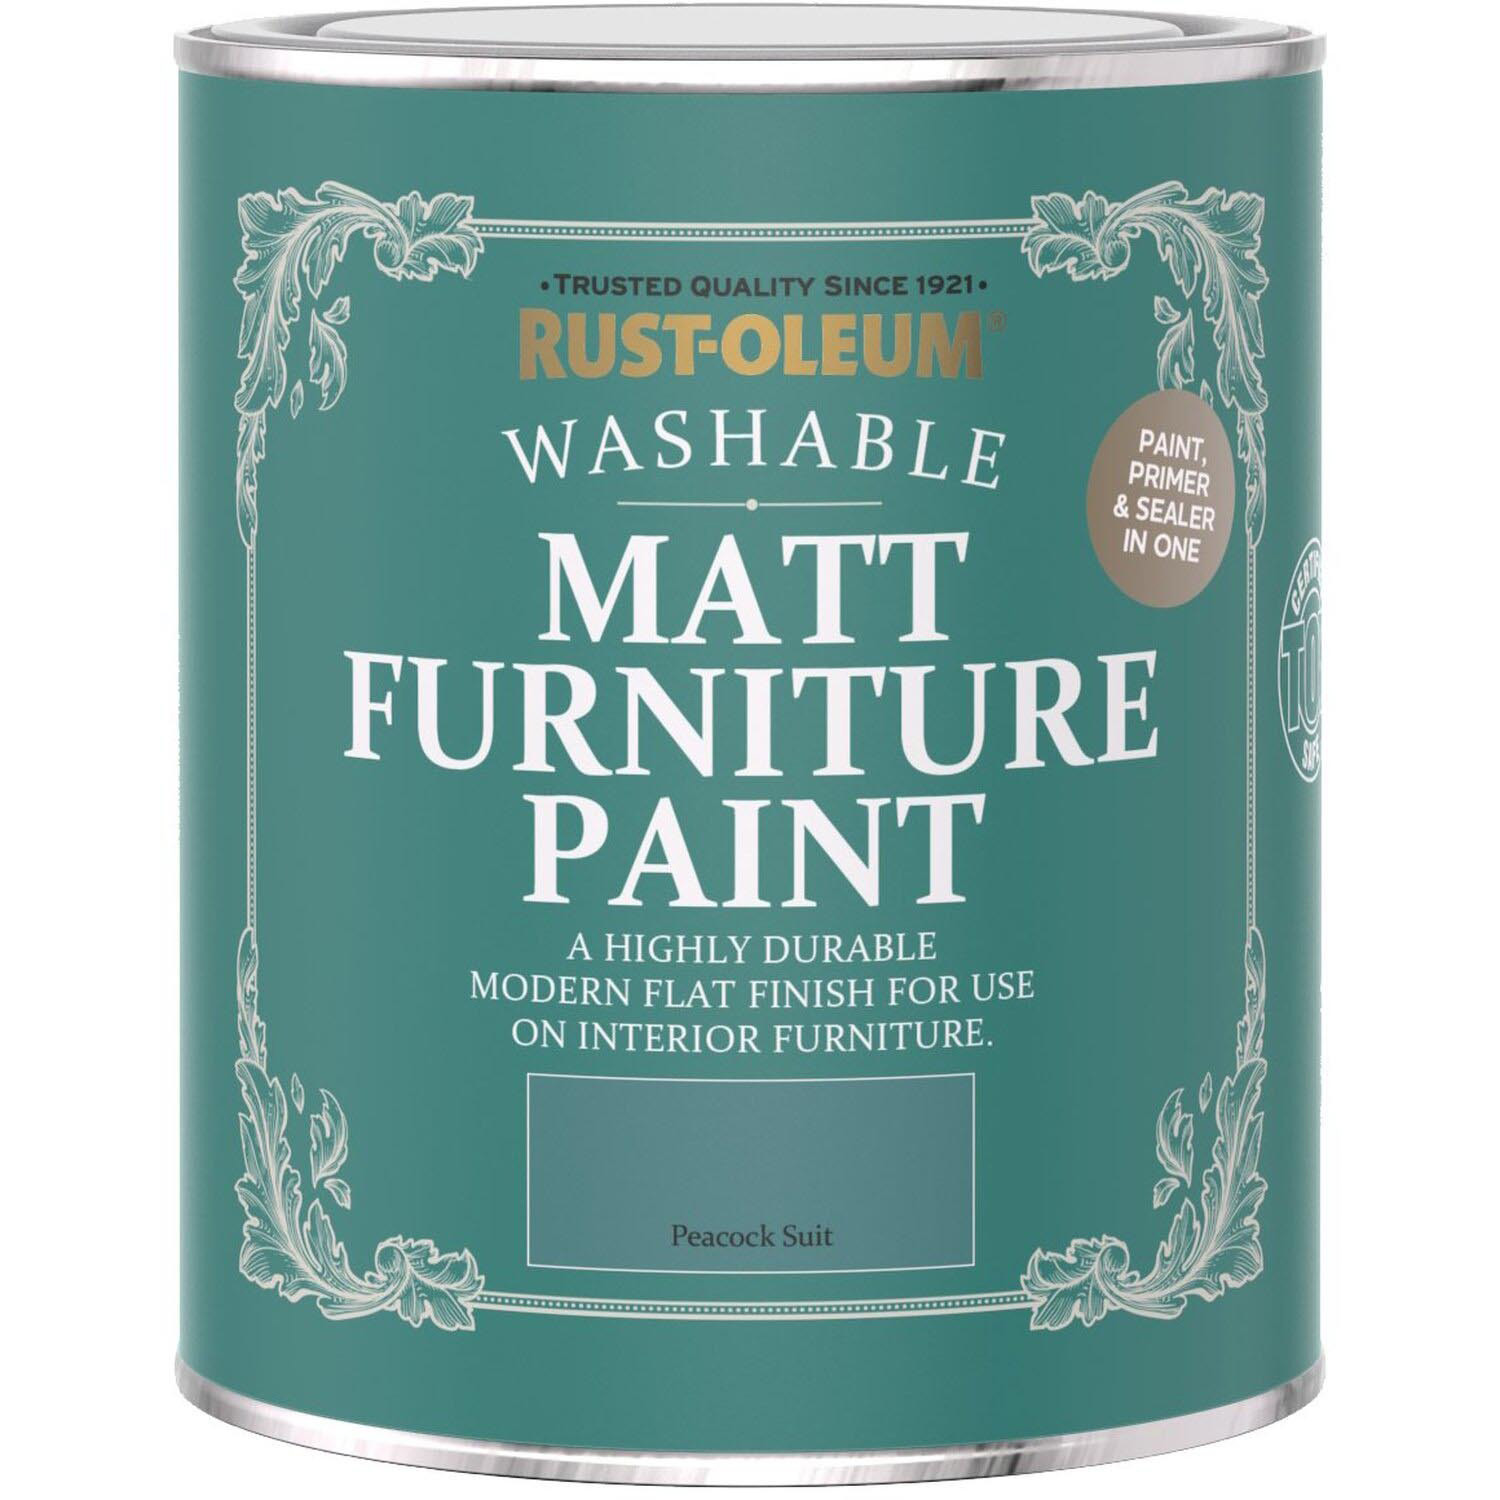 Rust-Oleum Peacock Suit Matt Furniture Paint 750ml Image 2